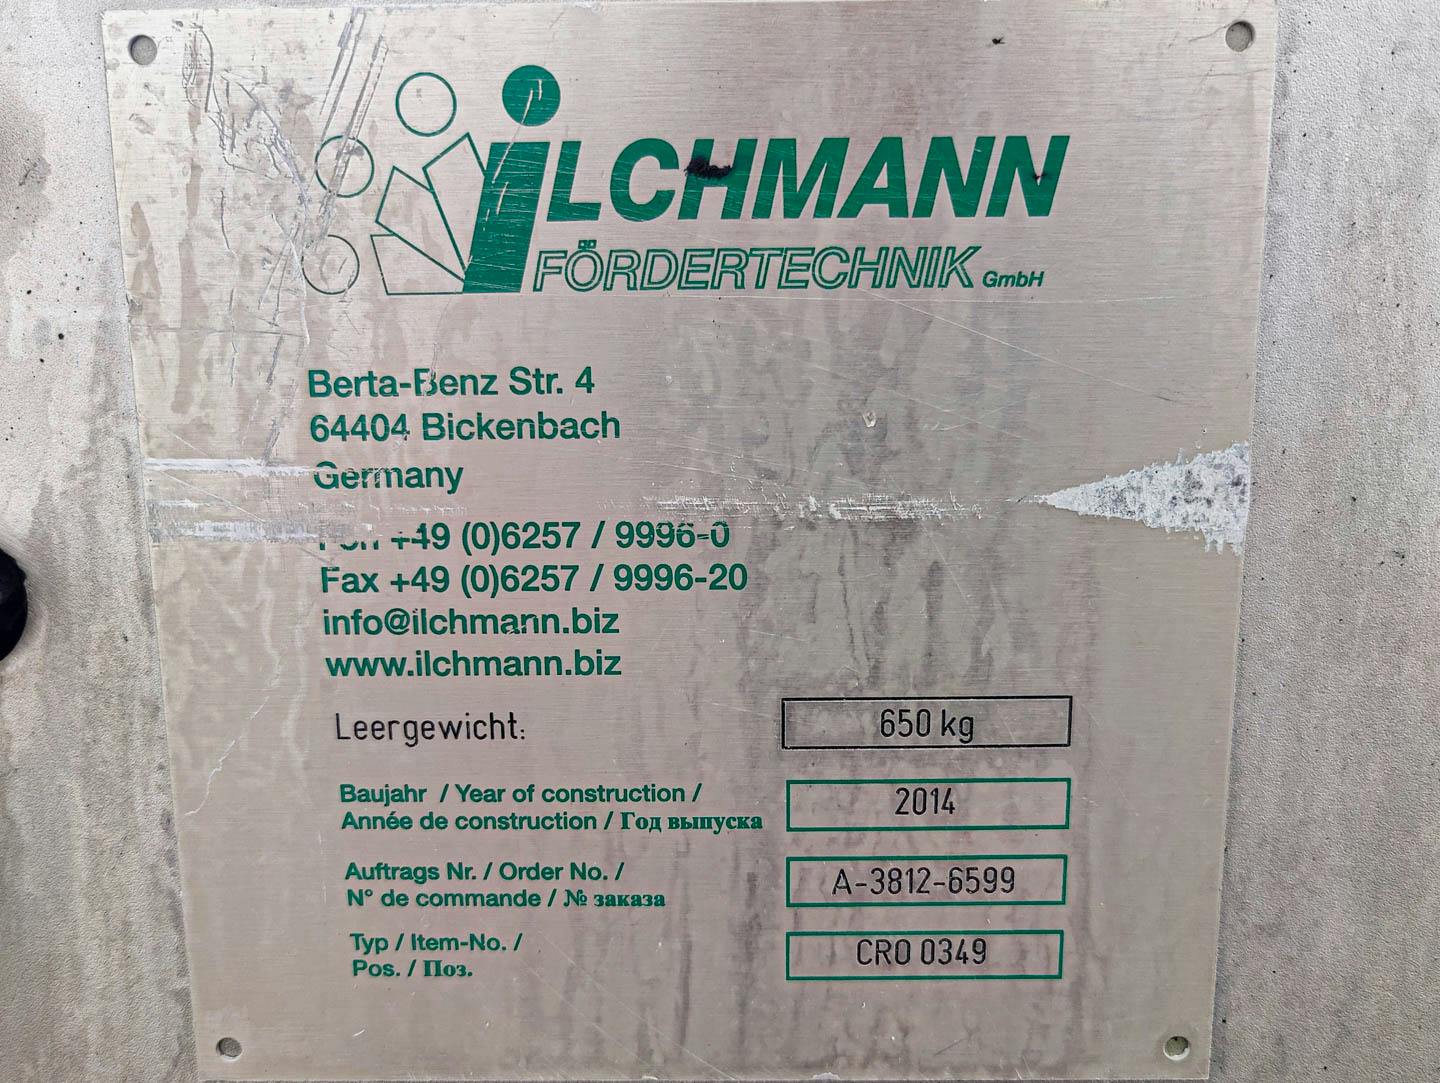 Ilchmann DTSF 2x200x1.857mm double screw - Horizontal screw conveyor - image 12